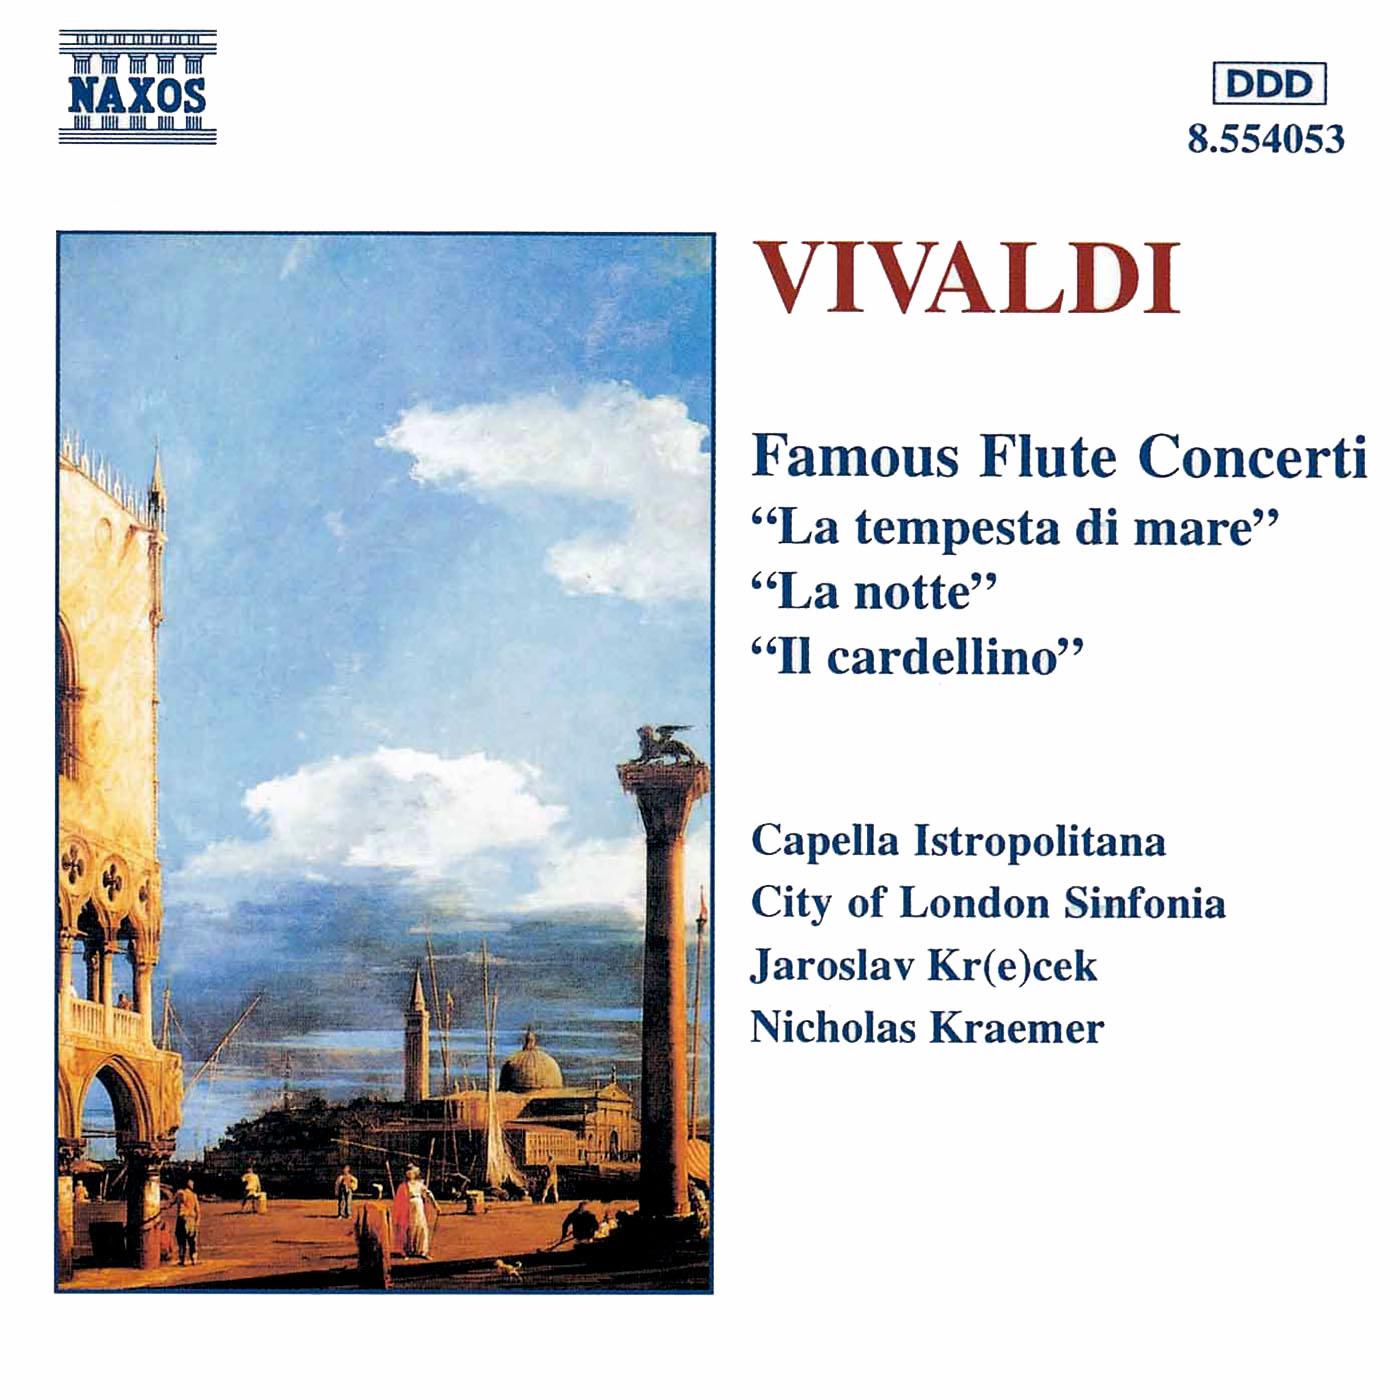 Flautino Concerto in C Major, RV 444*: III. Allegro molto